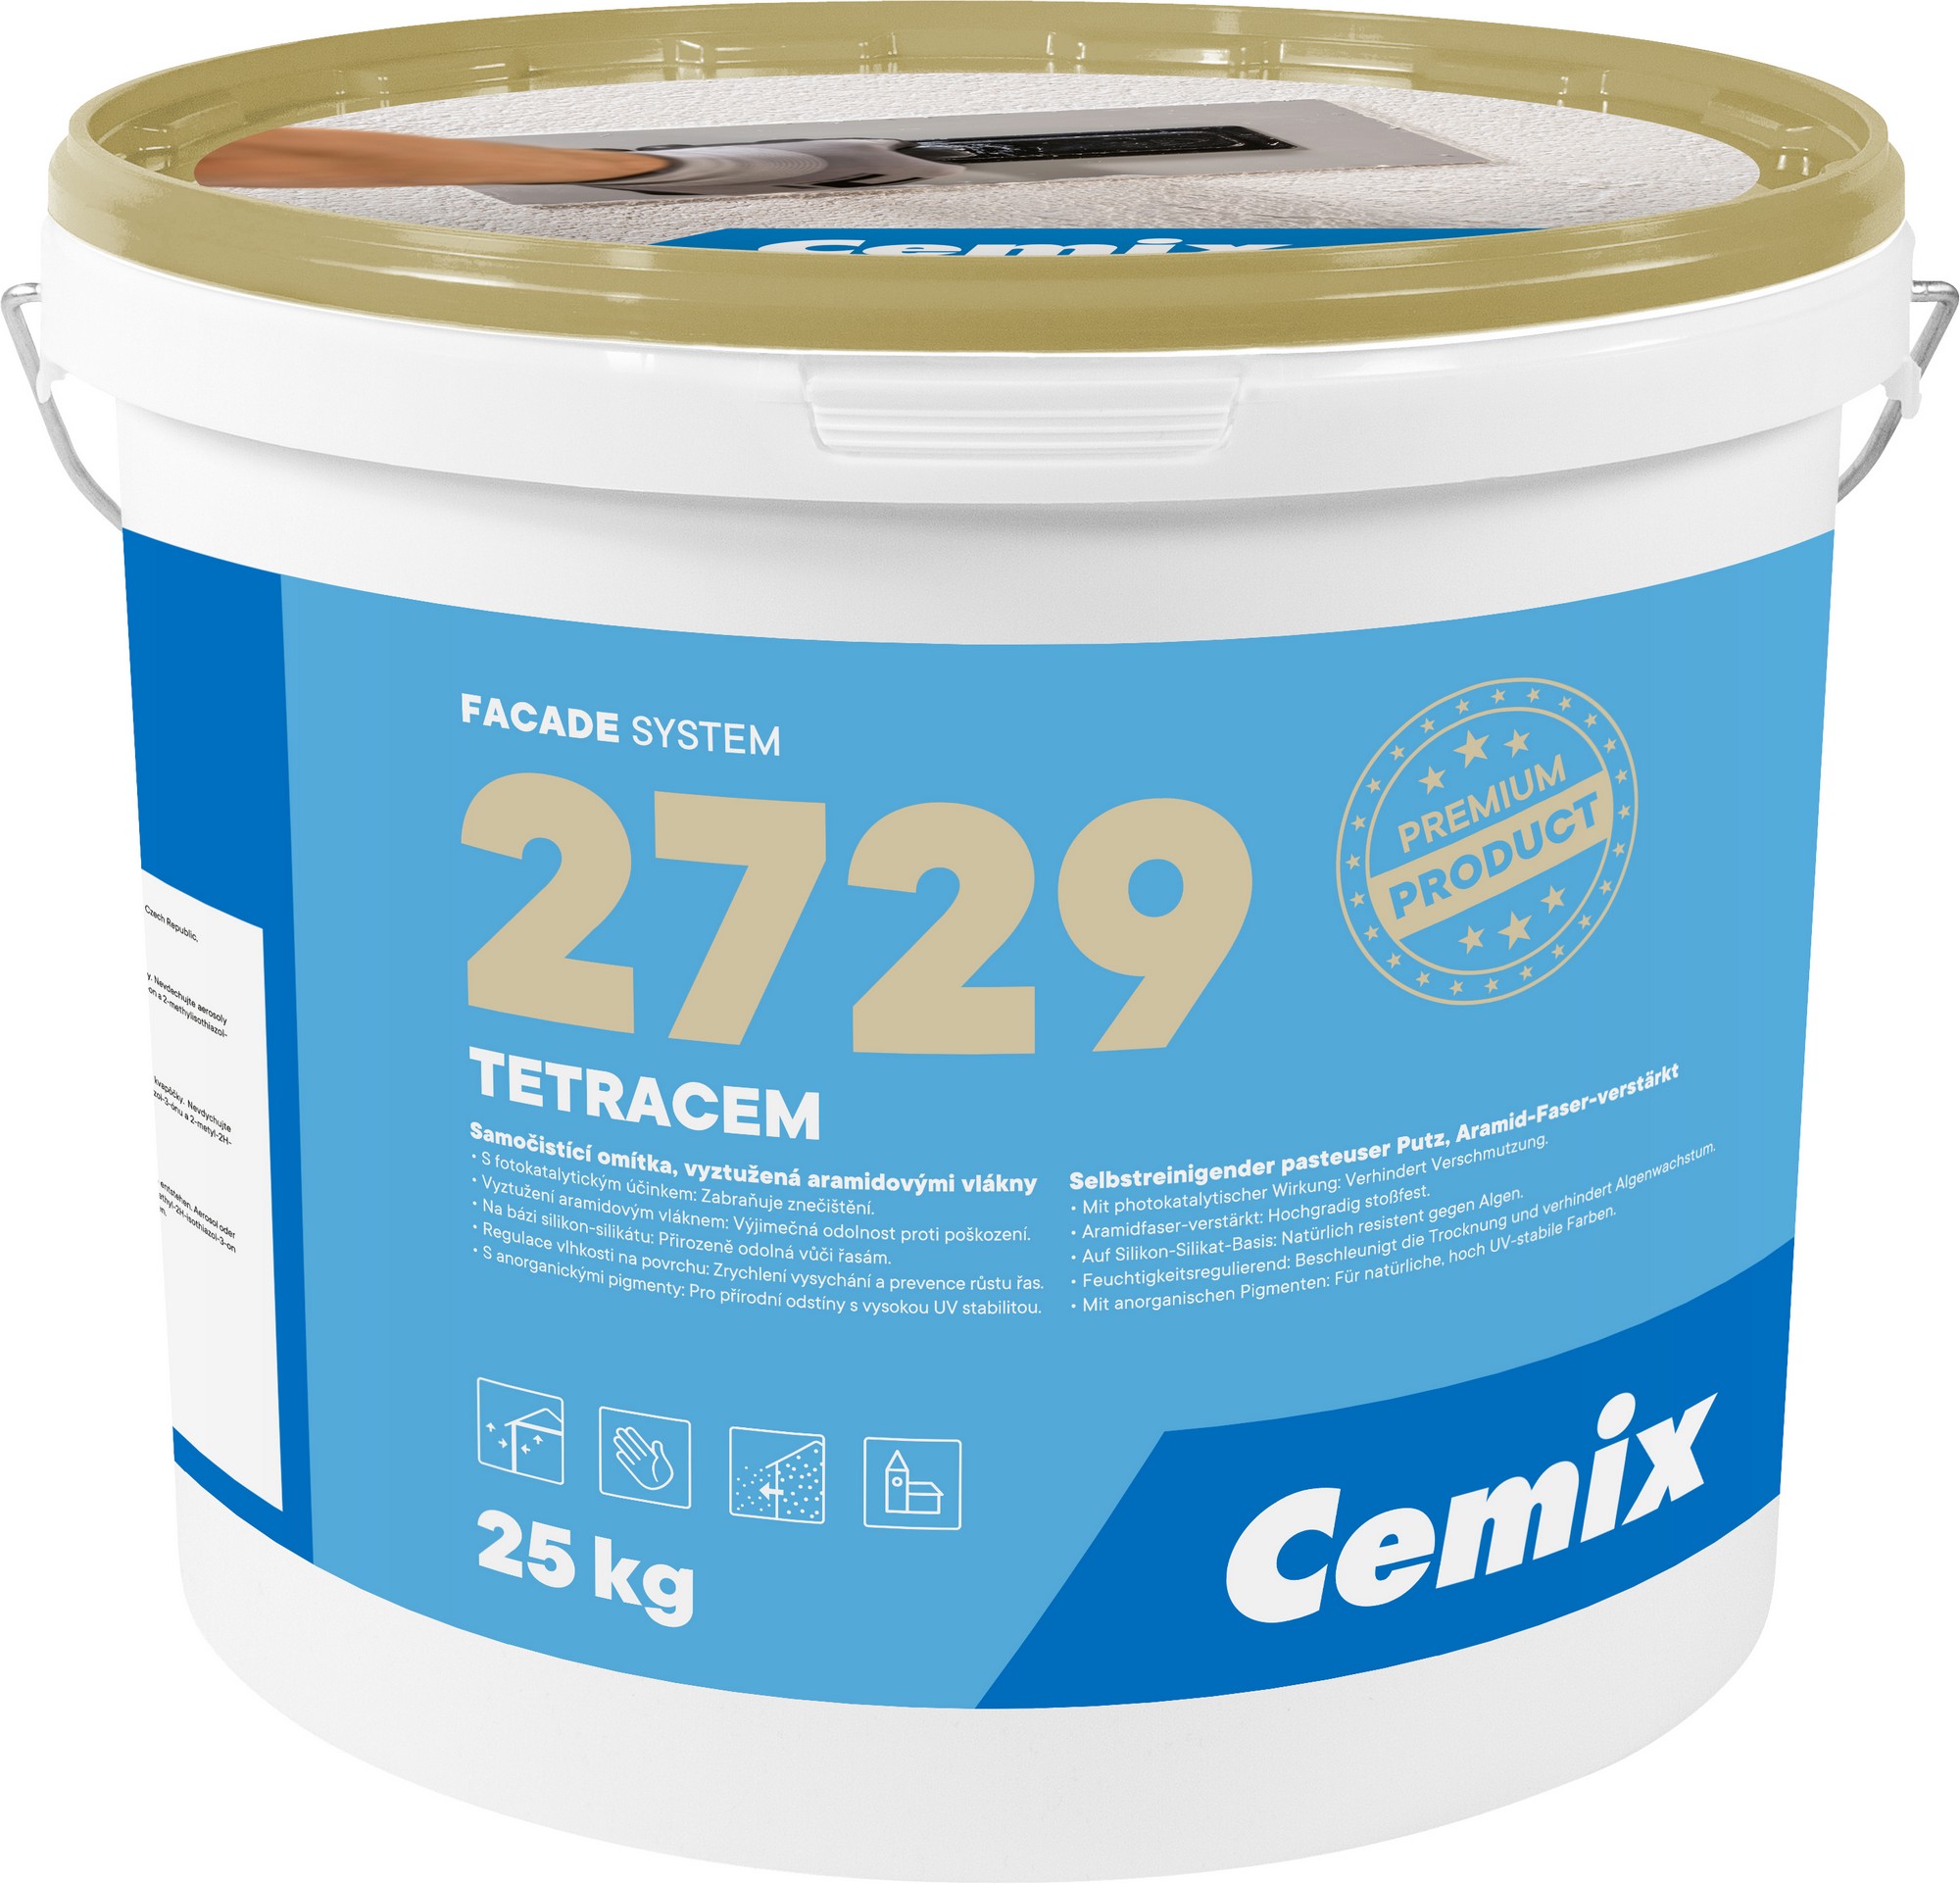 Omítka samočisticí Cemix 2729 TETRACEM Z 2,0 mm bezpř., 25 kg